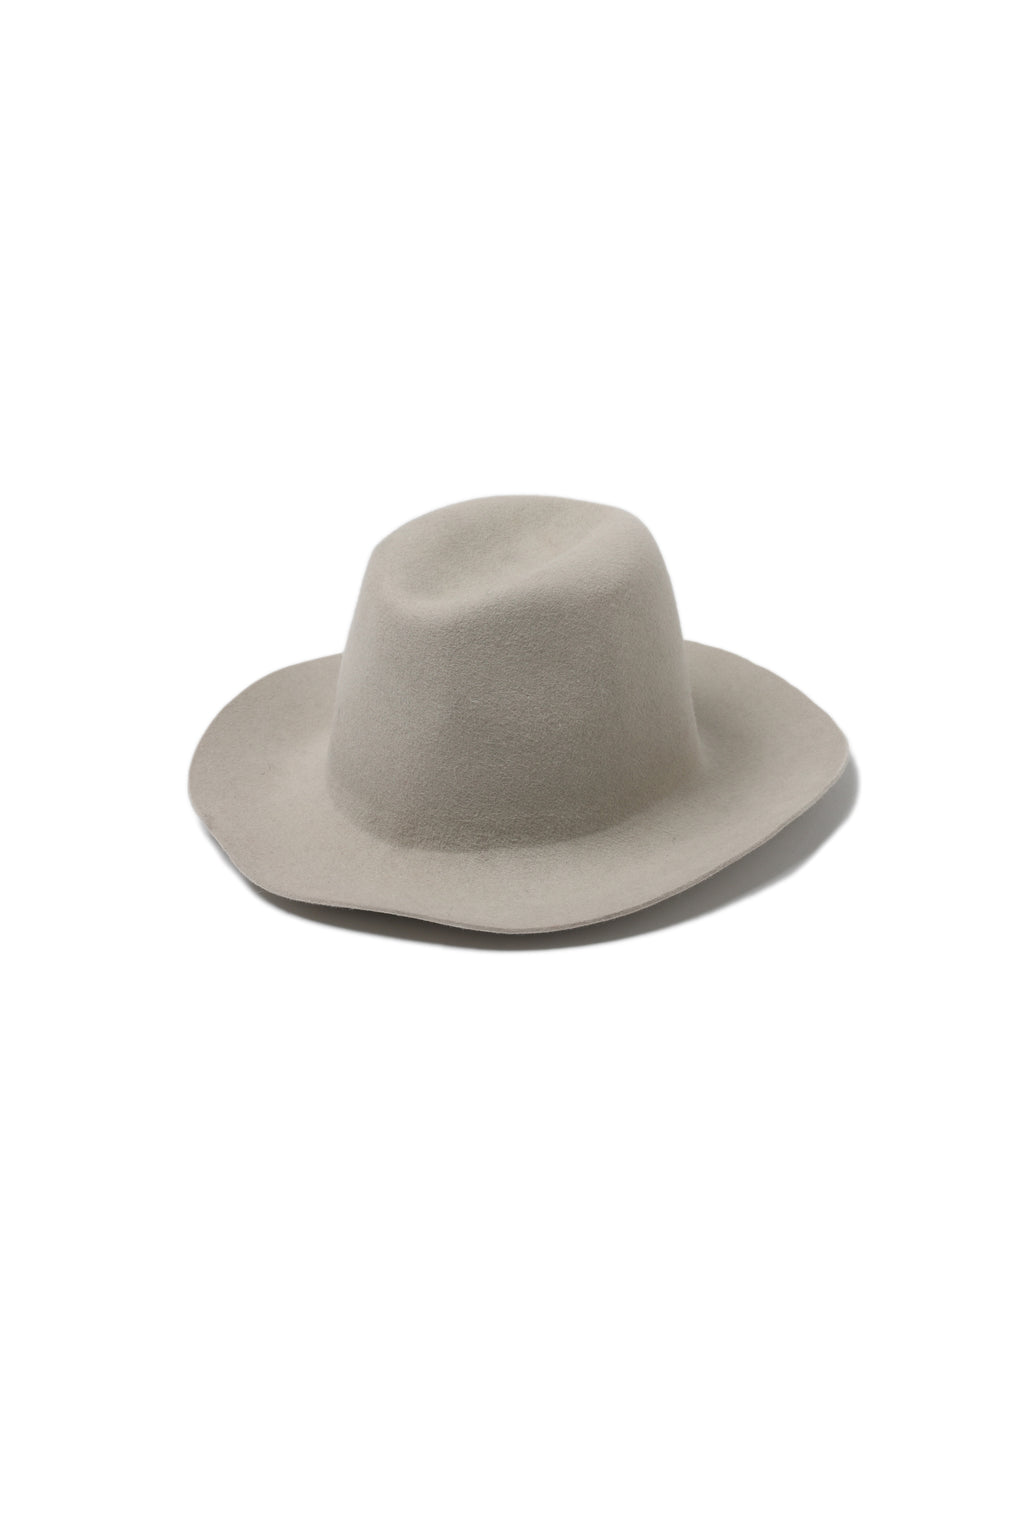 REINHARD PLANK HATS - White